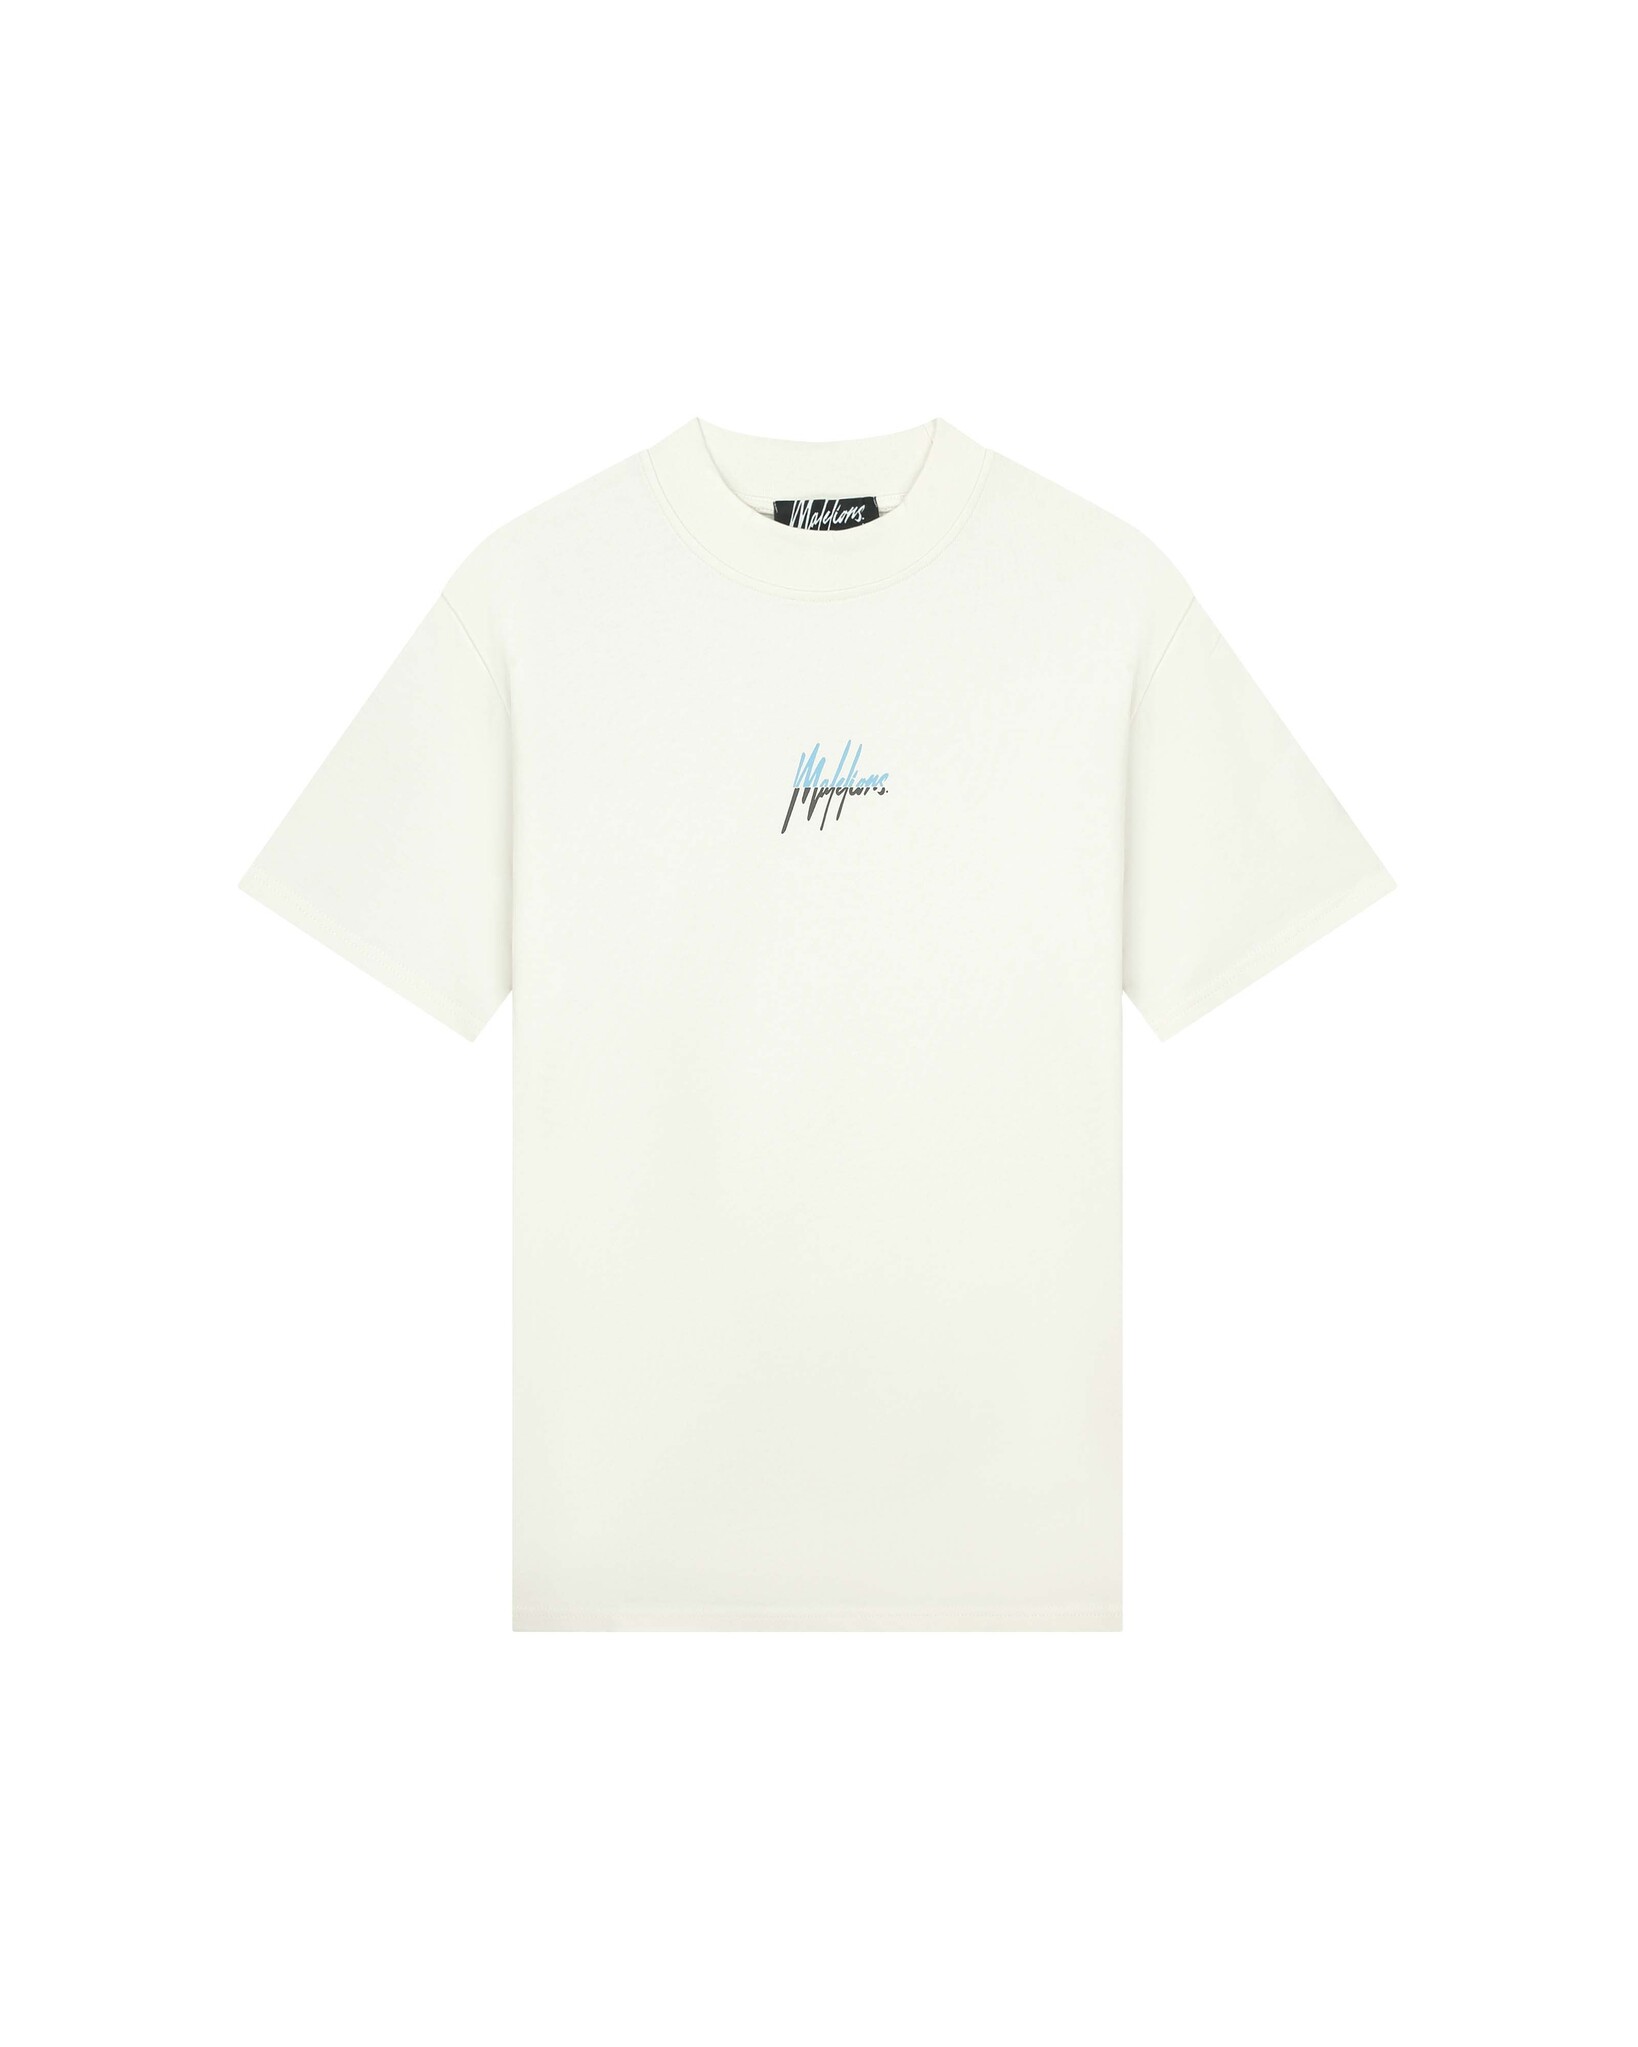 Malelions Men Oversized Split T-Shirt - Off-White/Light Blue